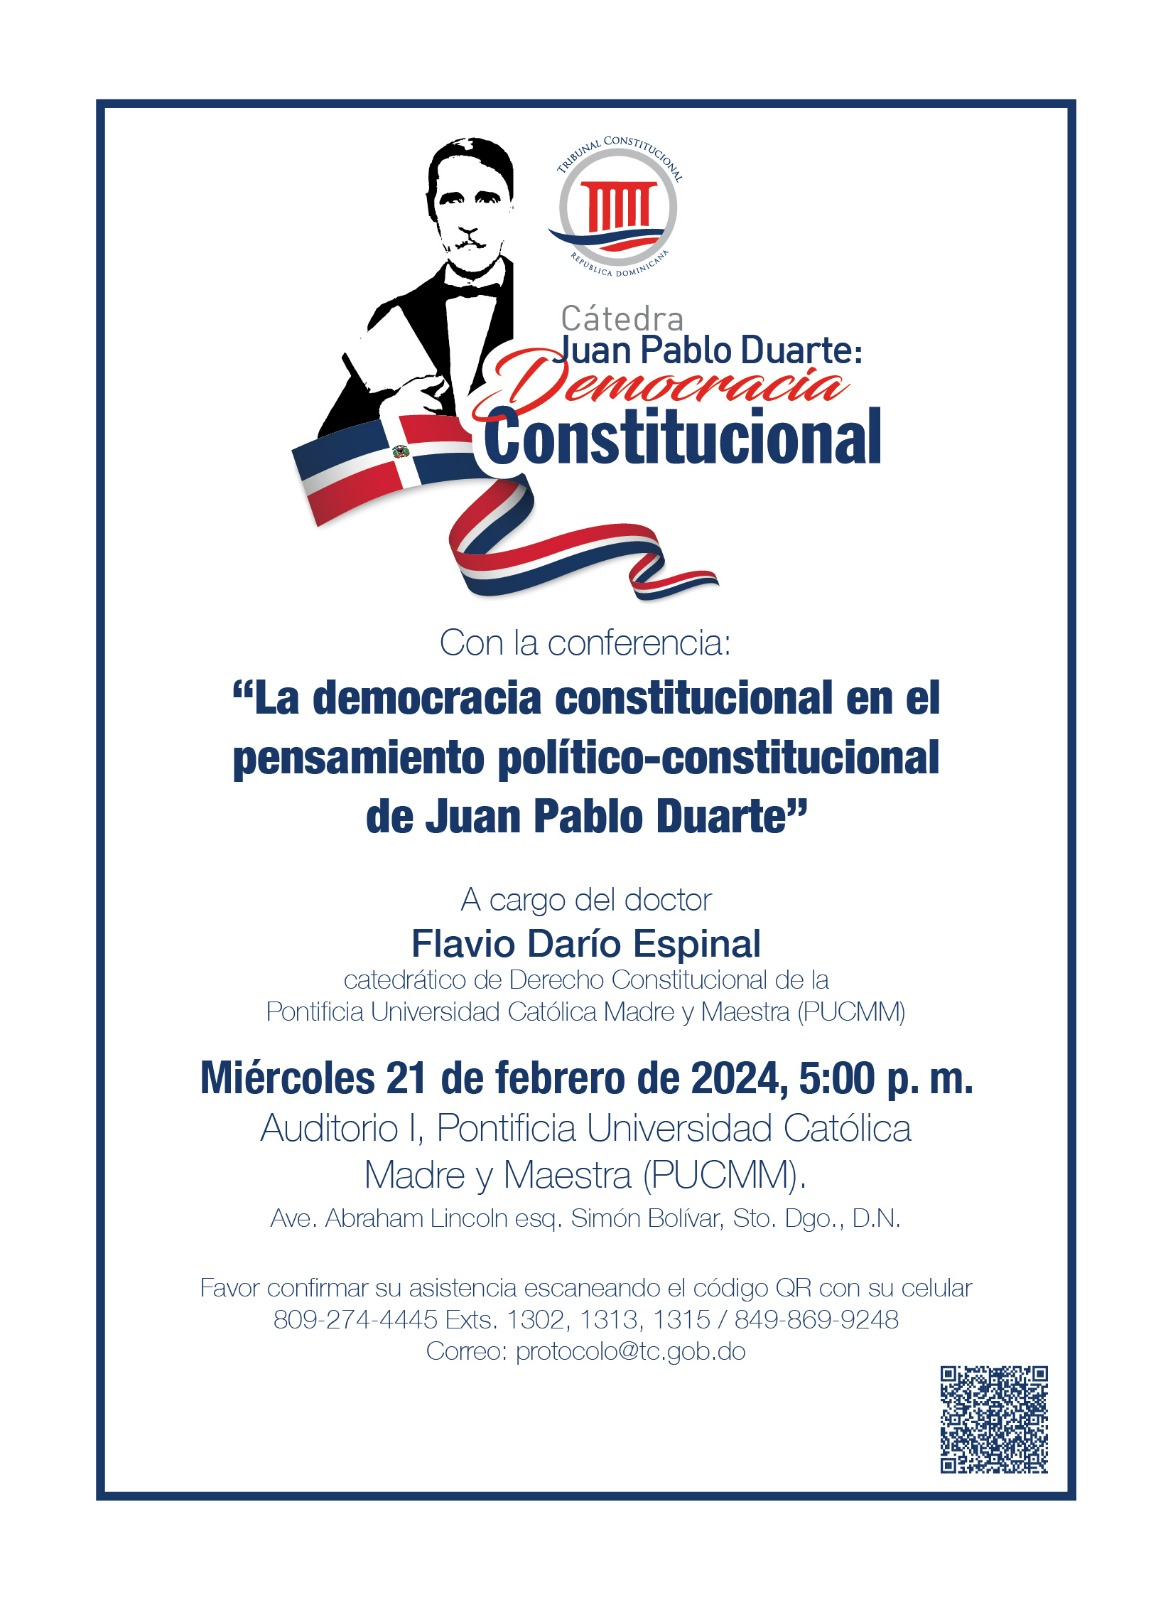 Cátedra Juan Pablo Duarte: Democracia Constitucional.